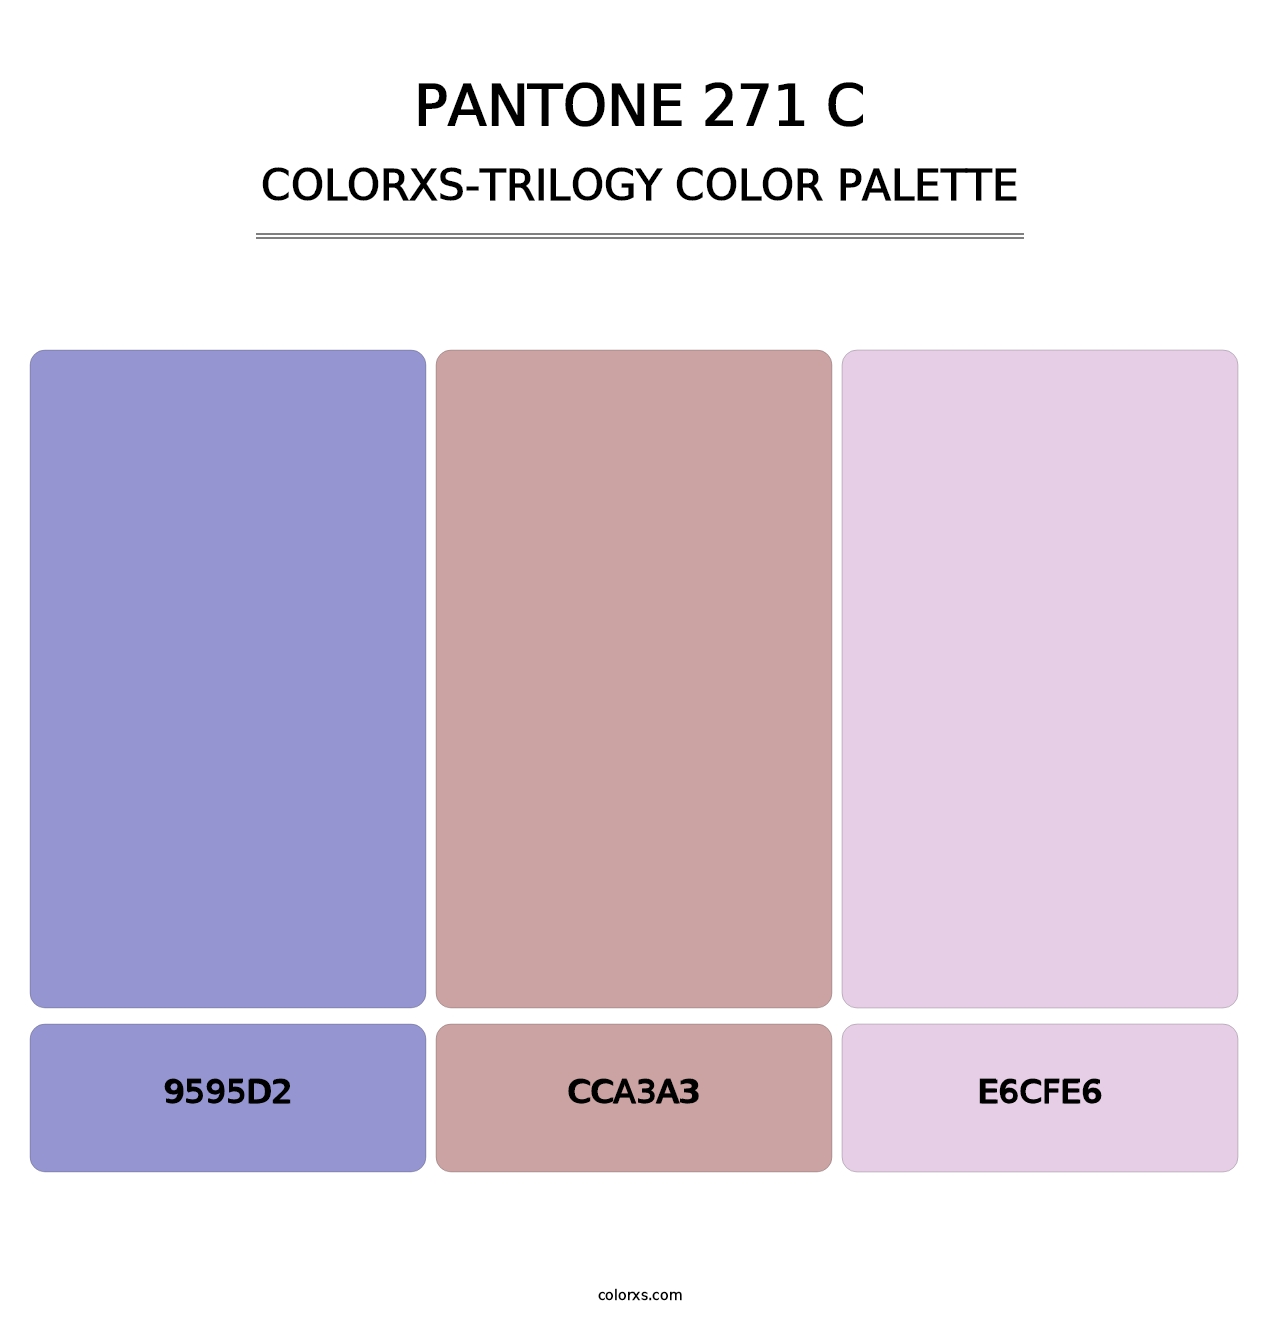 PANTONE 271 C - Colorxs Trilogy Palette